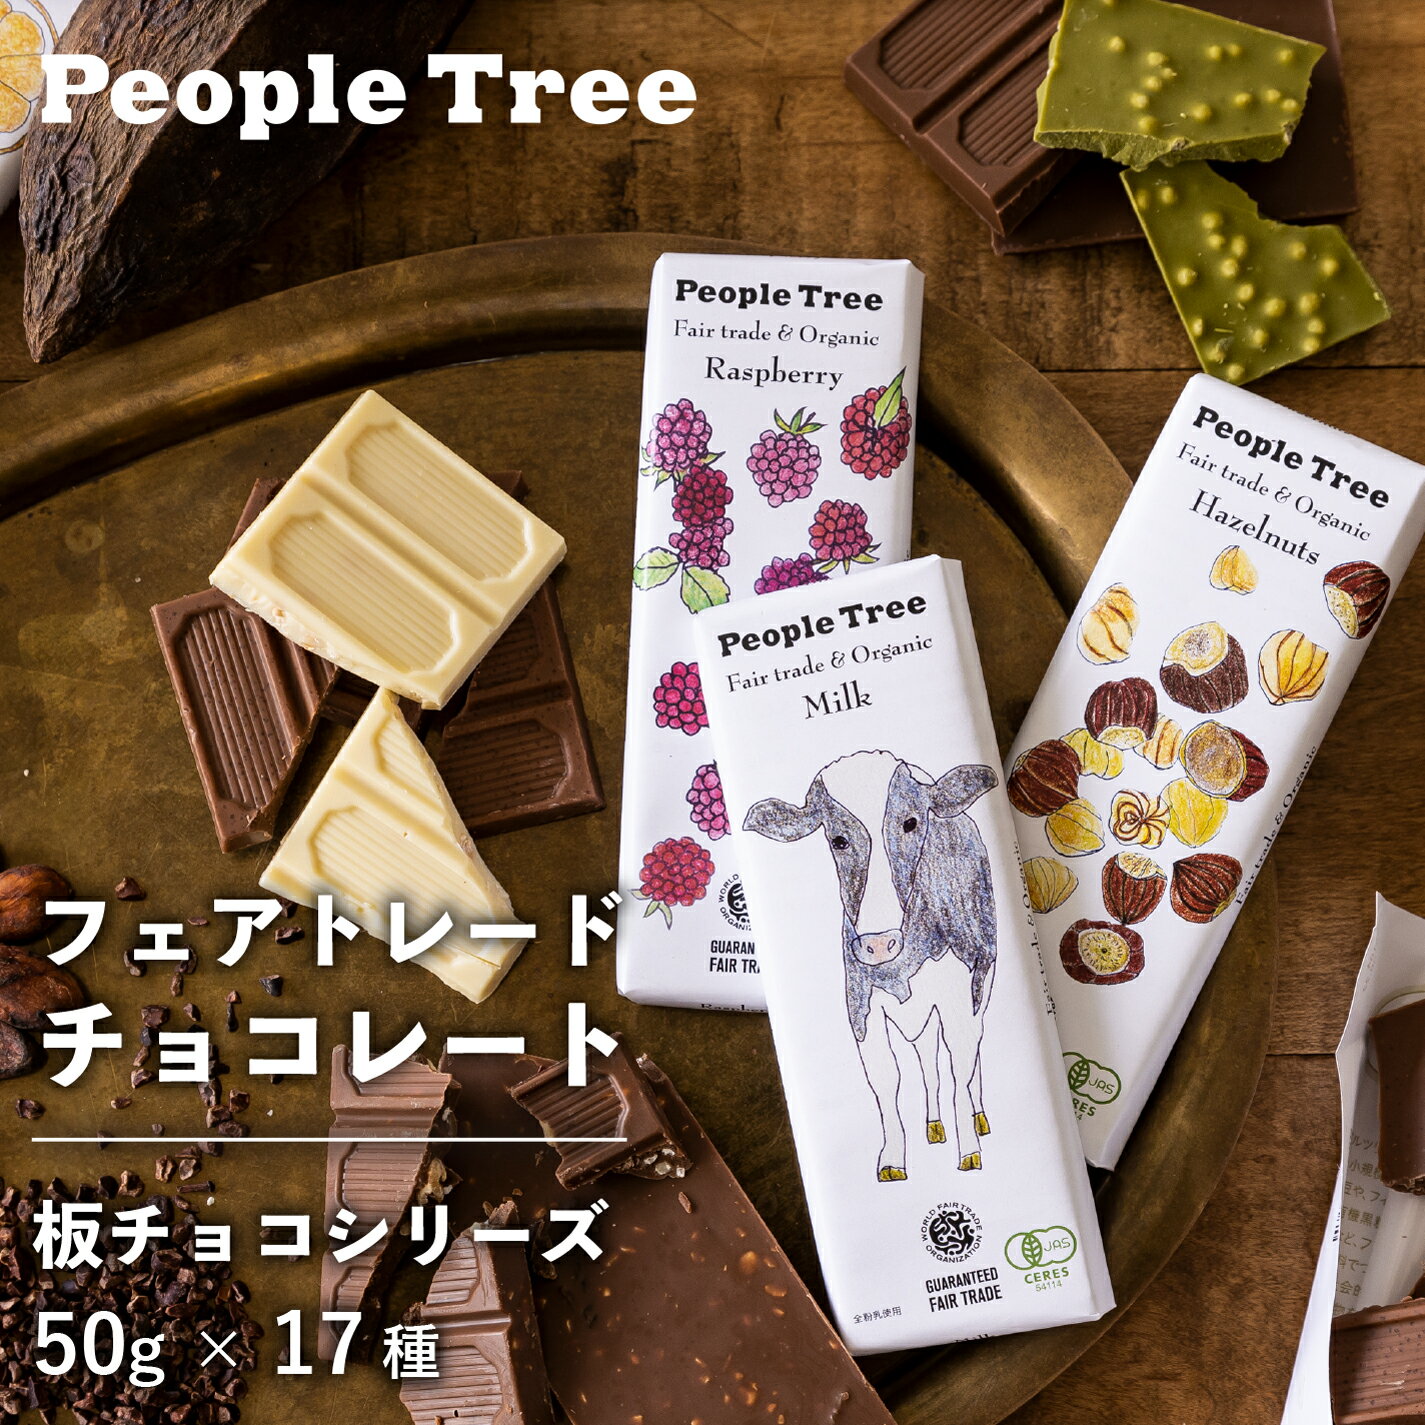 People Tree 板チョコシリーズ 板チョコベジシリー